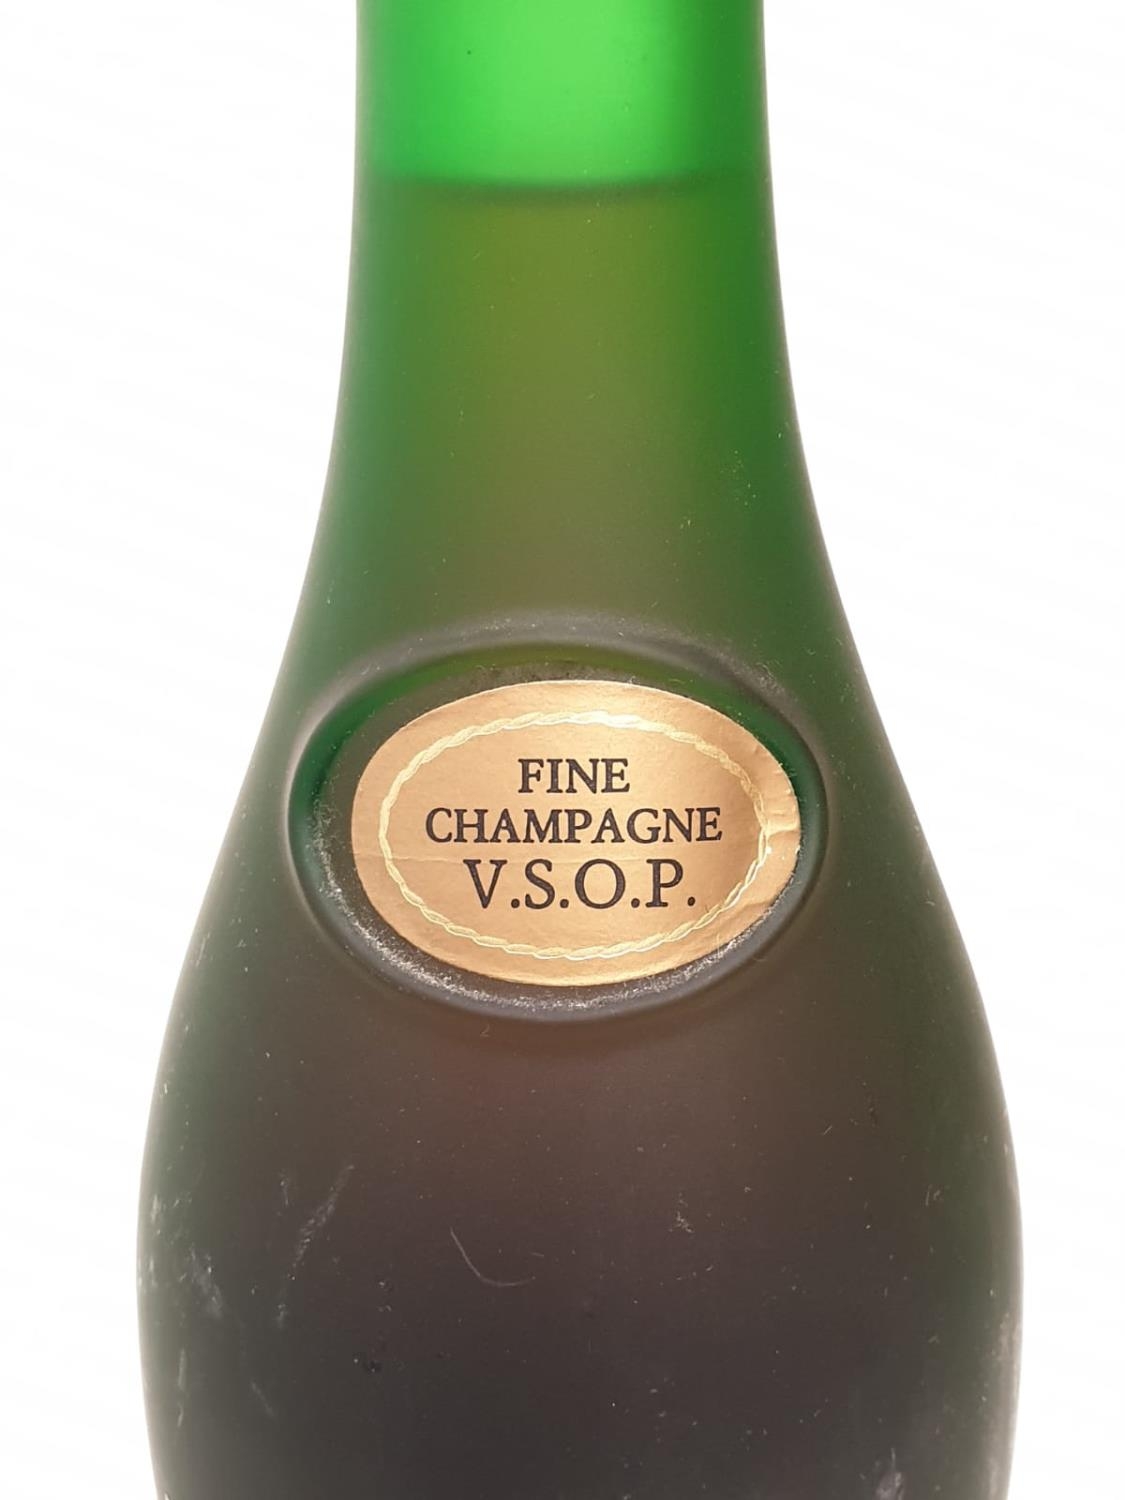 A bottle of vintage V.S.O.P Remy Martin cognac. - Image 3 of 6